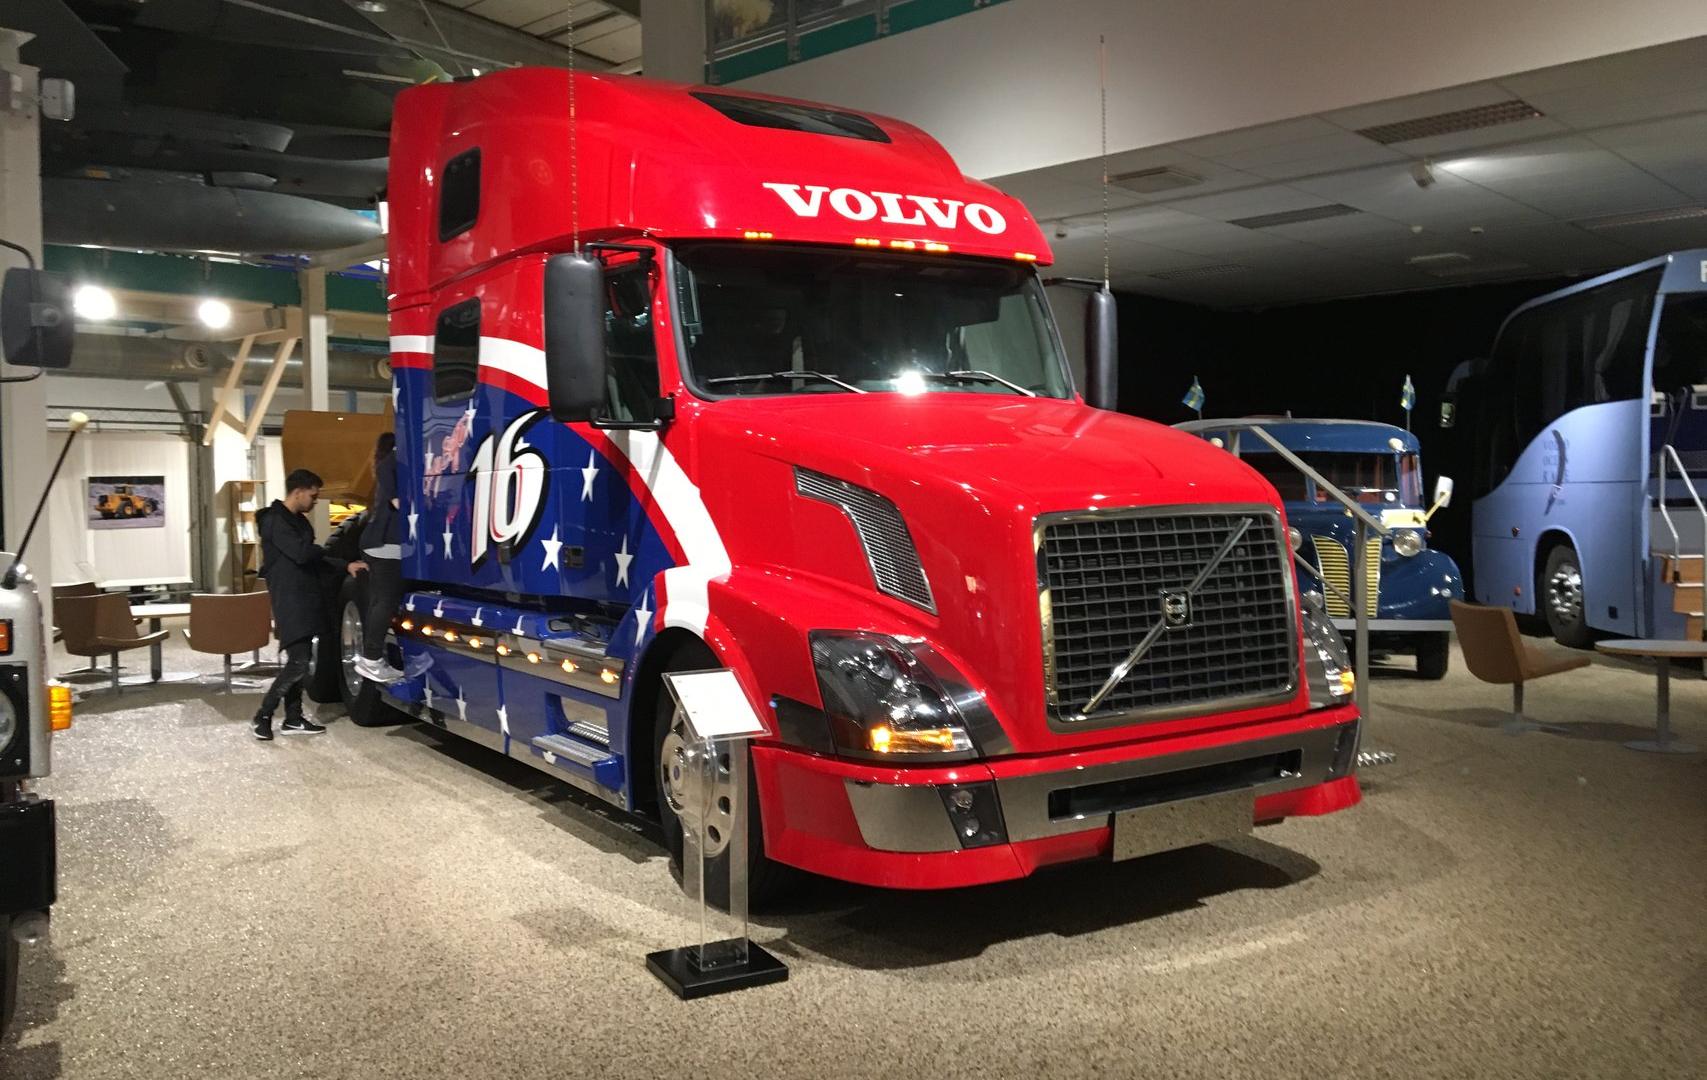 Fenomen Volvo w Szwecji wizyta w Muzeum Volvo w